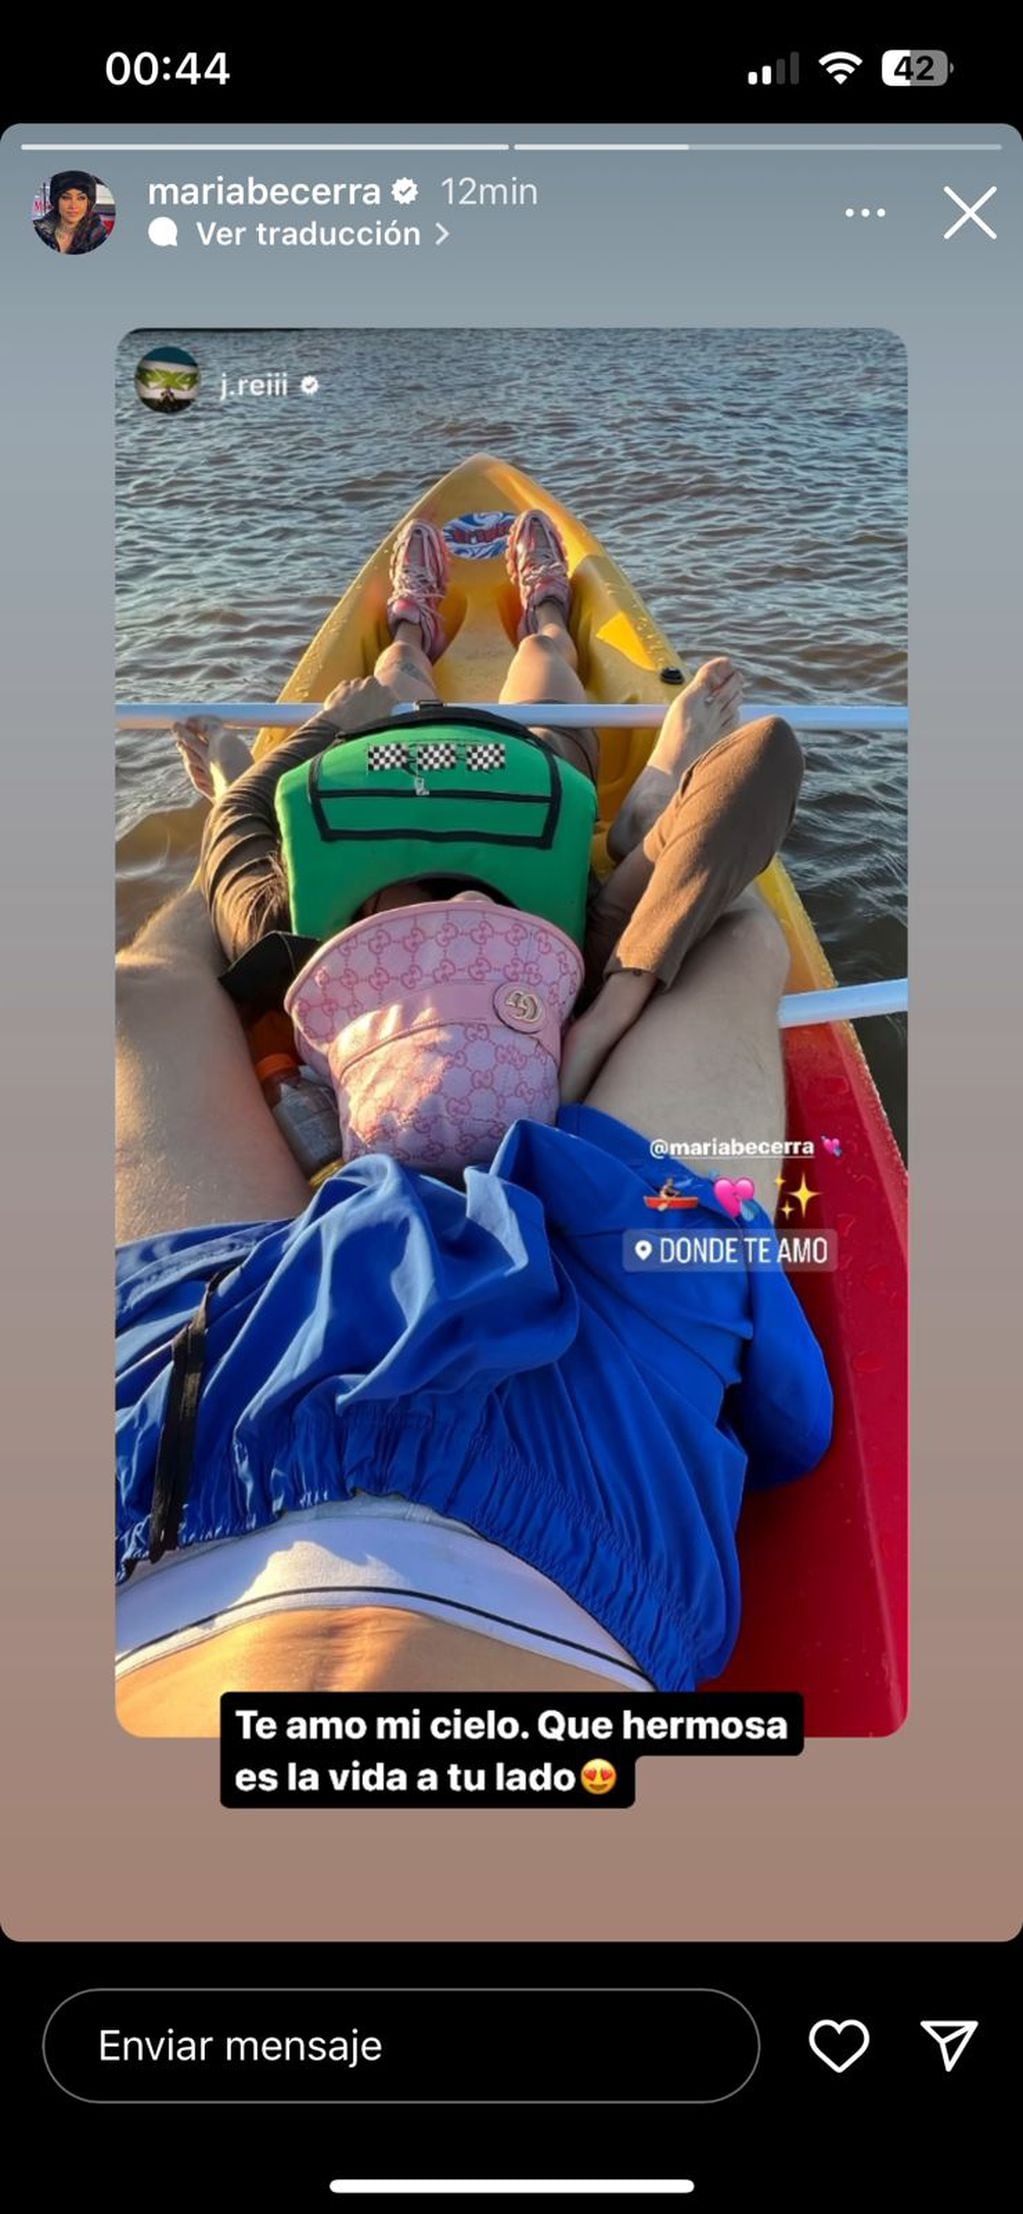 María Becerra posó en un kayak con su novio, J Rei 